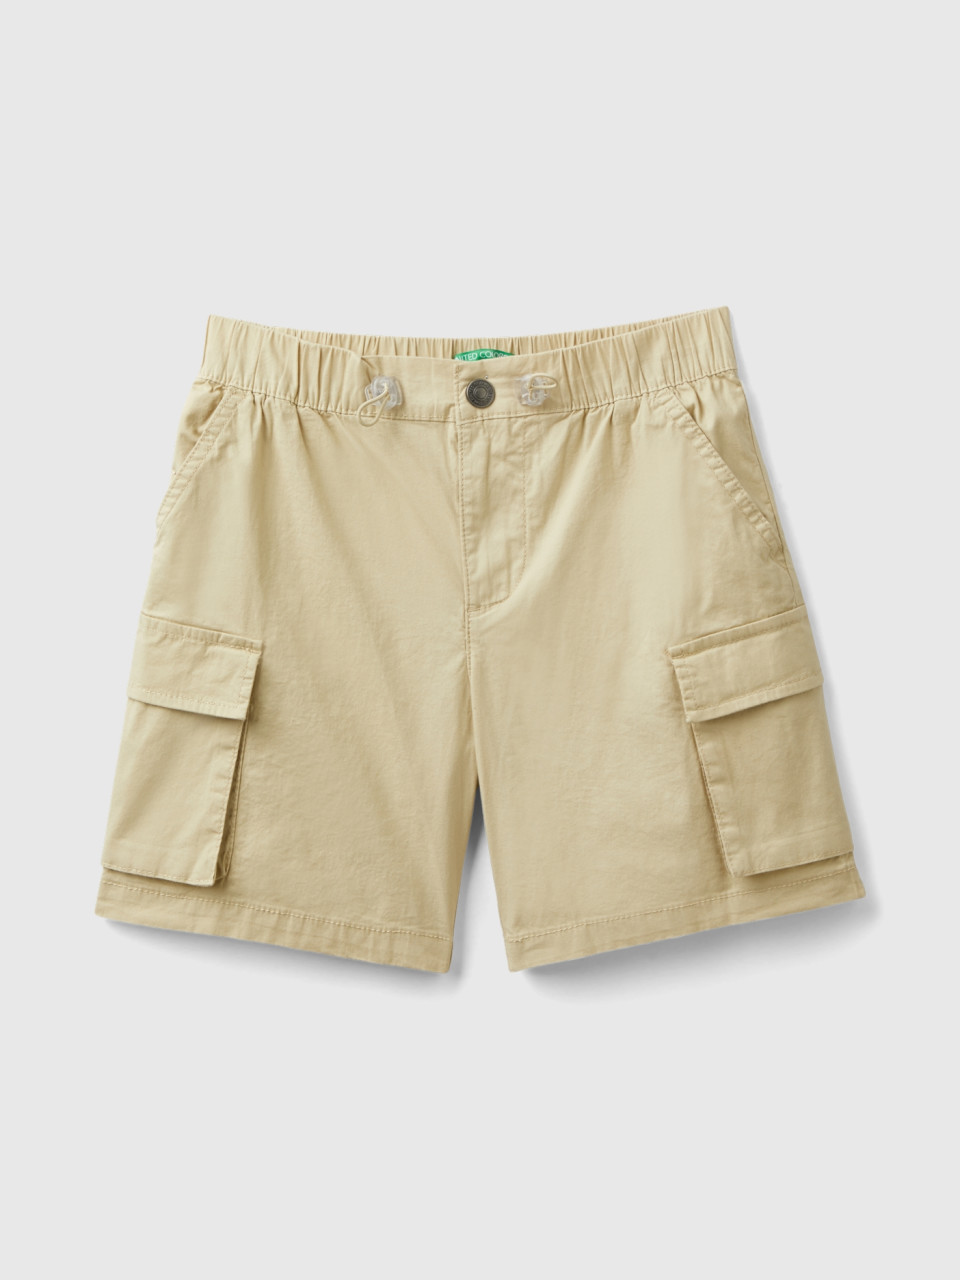 Benetton, Cargo Bermuda Shorts In Stretch Cotton, Beige, Kids